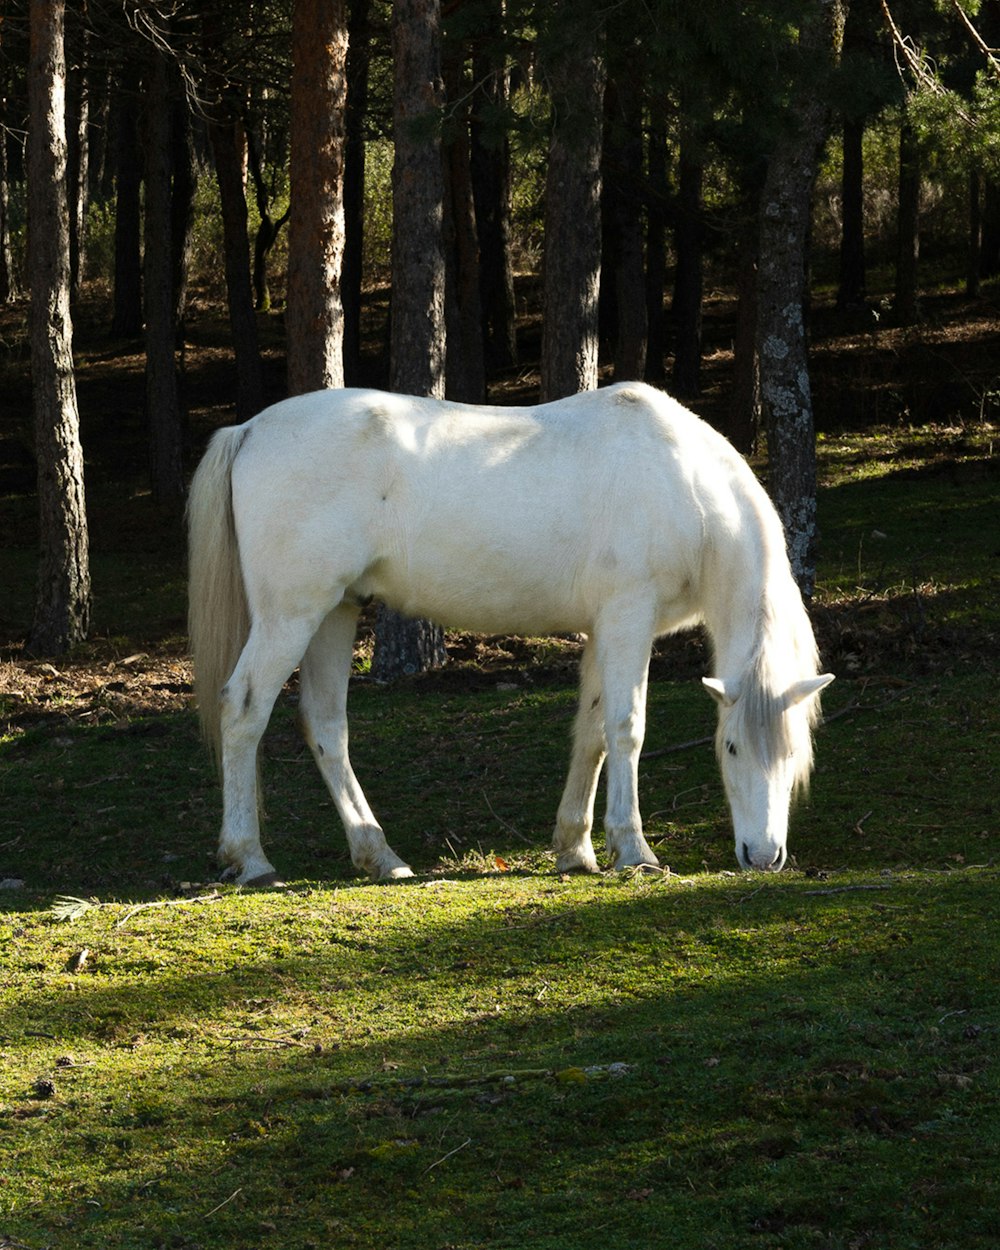 a white horse grazing in a grassy field